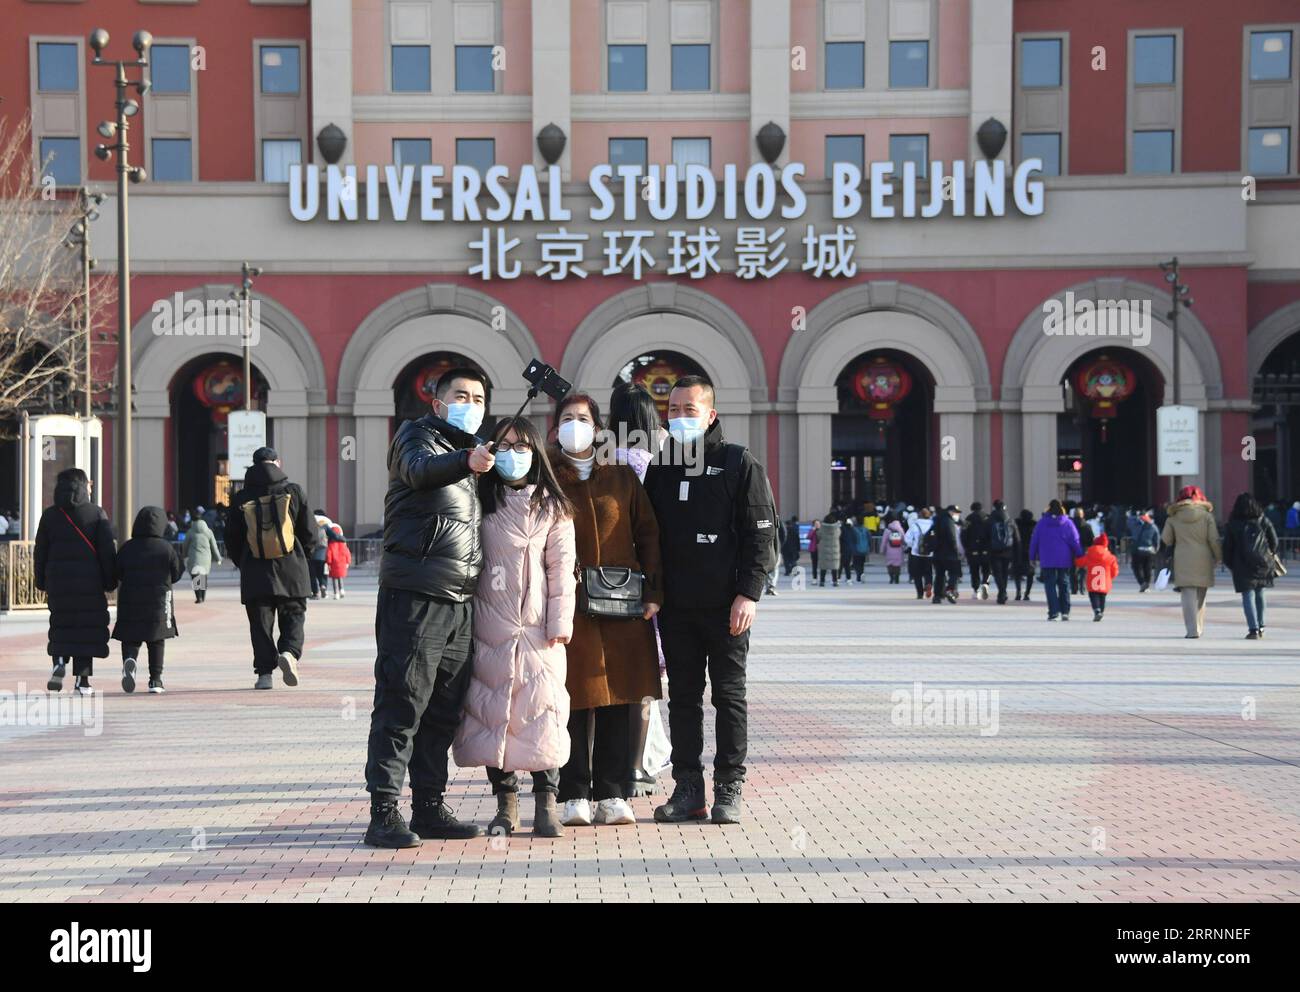 230122 -- PECHINO, 22 gennaio 2023 -- i turisti posano per le foto all'Universal Beijing Resort di Pechino, capitale della Cina, 22 gennaio 2023. Il Capodanno lunare cinese, o festival di primavera, cade la domenica. CHINA-YEAR OF THE RABBIT-SPRING FESTIVAL CN RENXCHAO PUBLICATIONXNOTXINXCHN Foto Stock